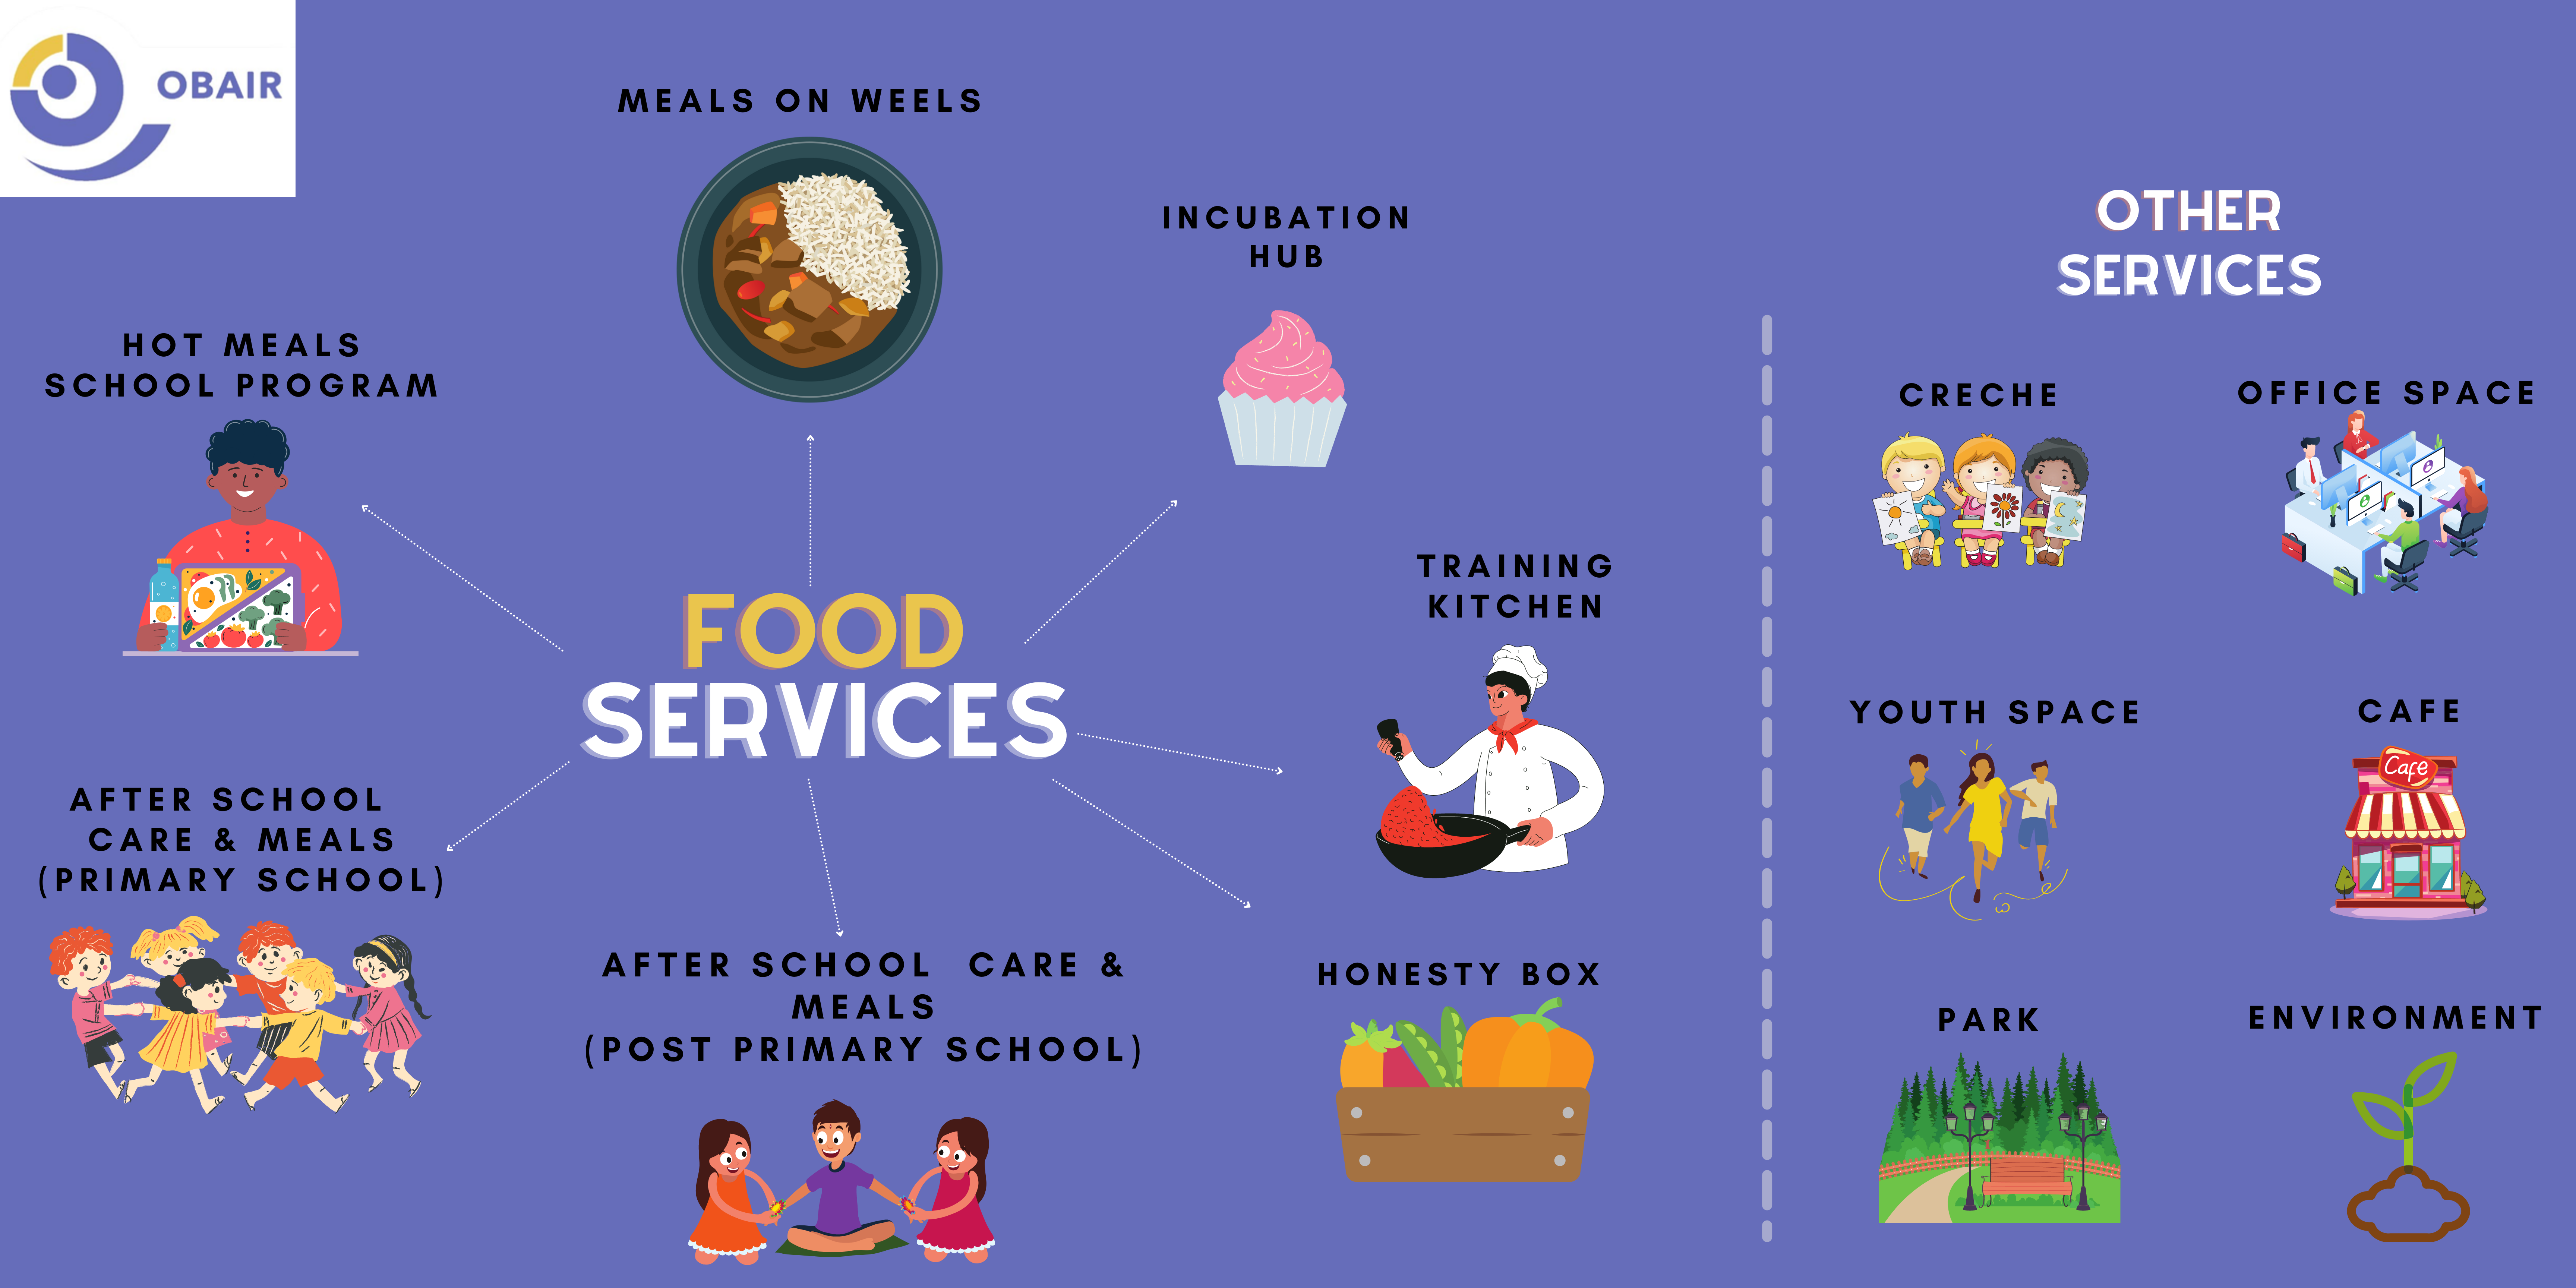 Food Hub Services at Obair